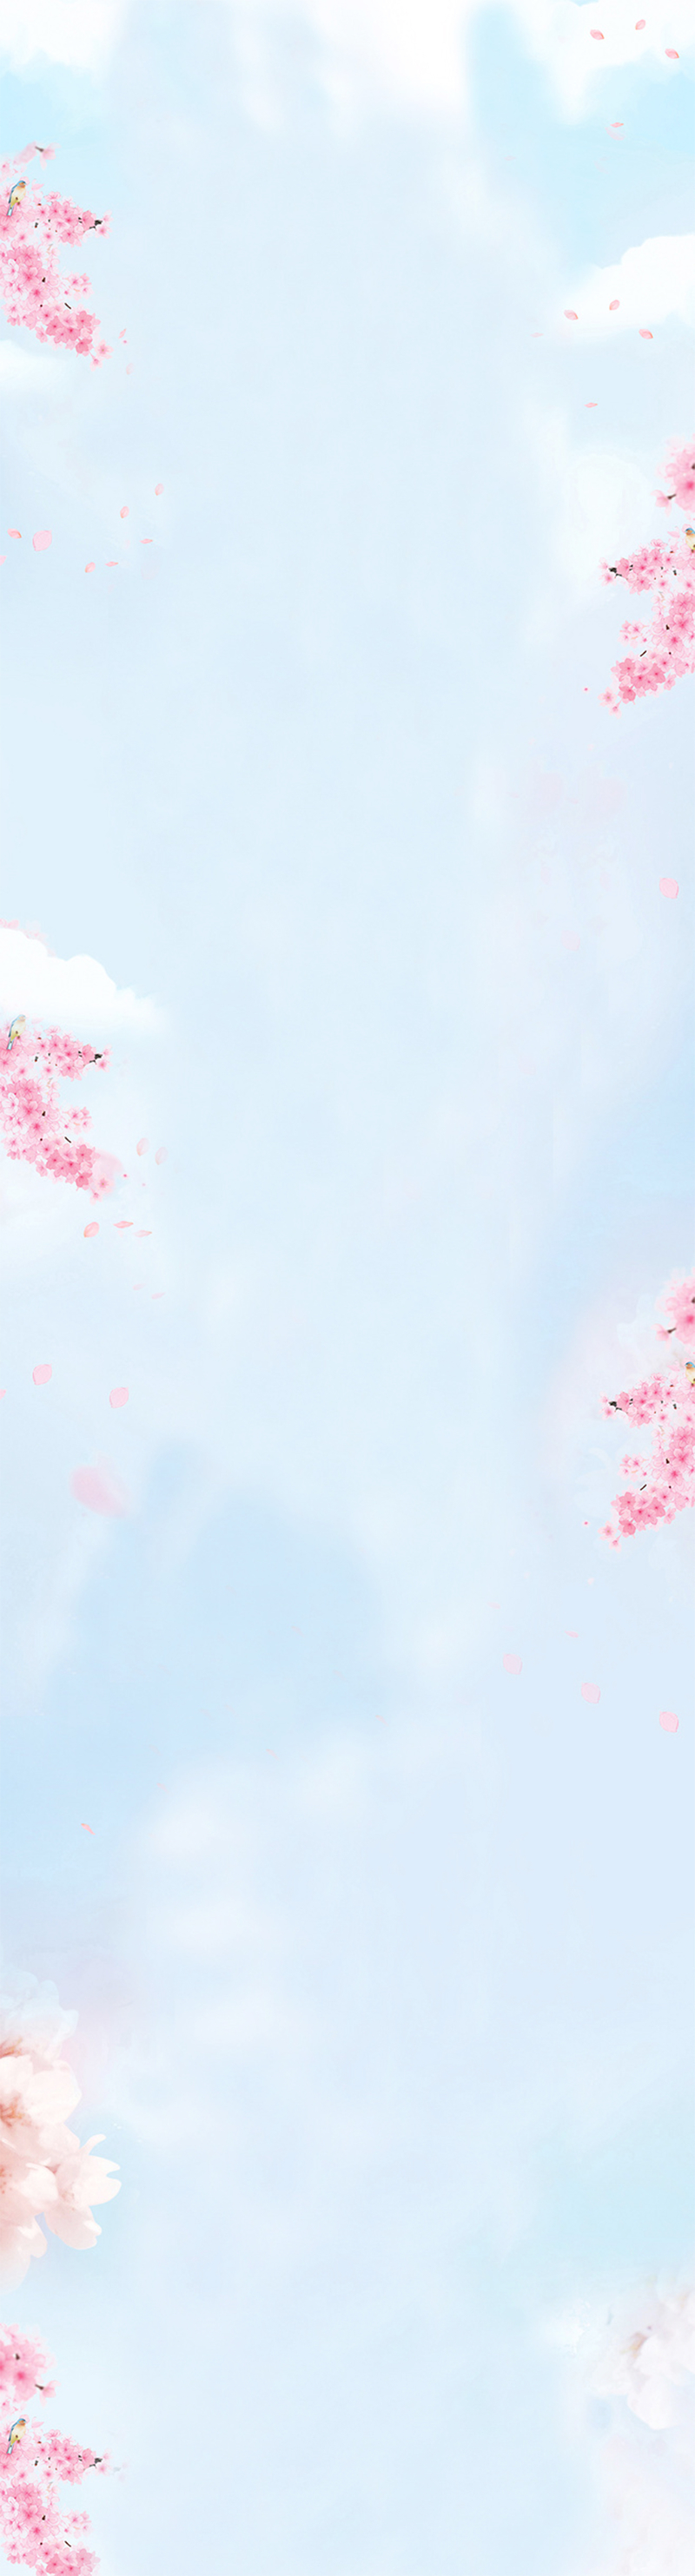 淡蓝色天空粉色梅花背景